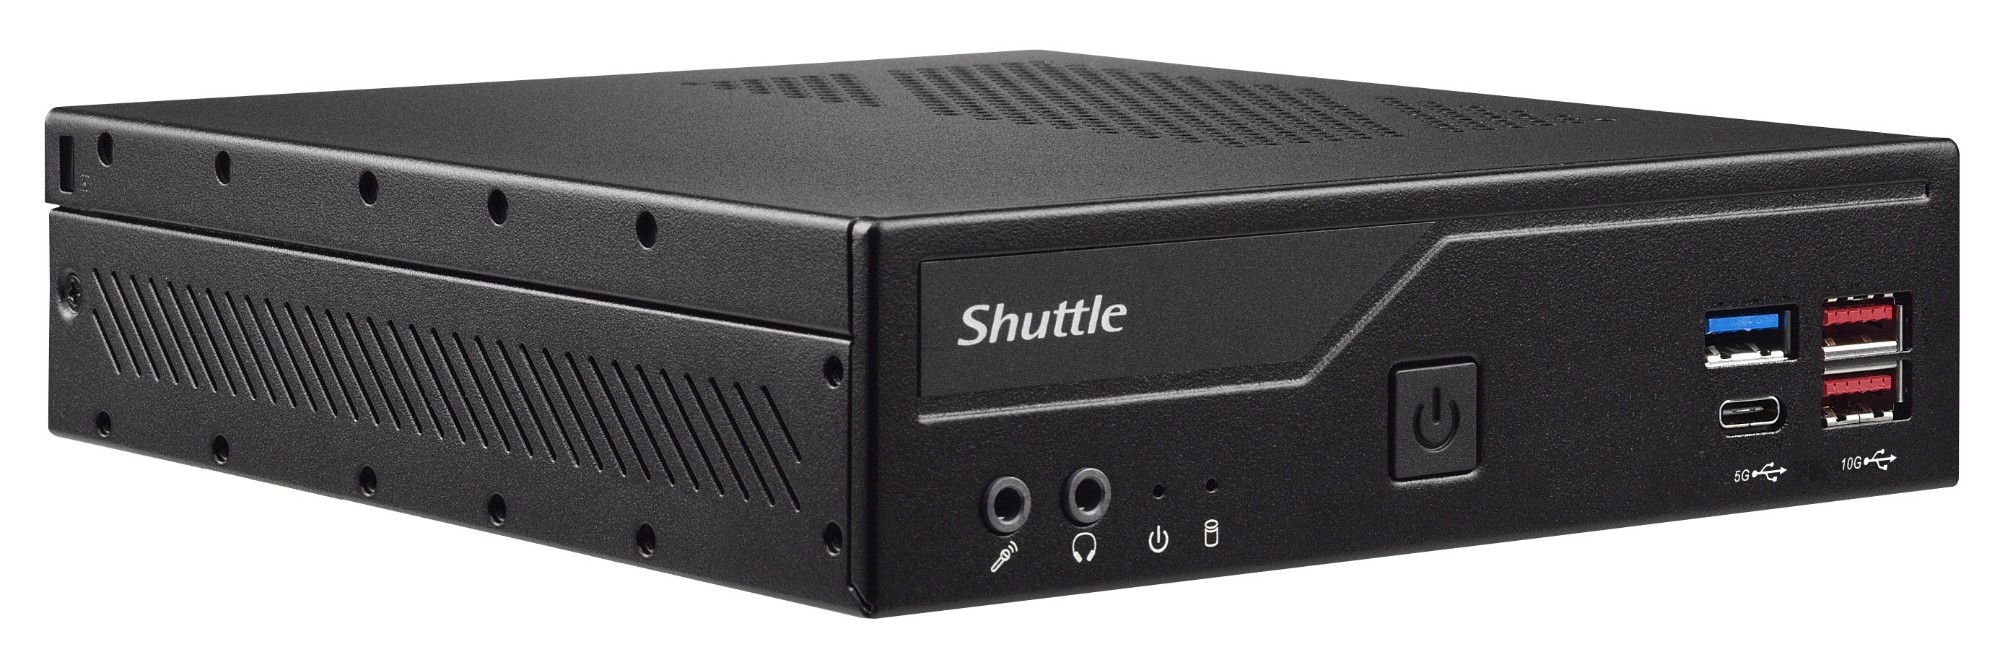 Shuttle Slim PC DH670V2 , S1700, 2x HDMI, 2x DP , 2x 2.5G LAN, 2x COM, 8x USB, 1x 2.5", 2x M.2, 24/7 permanent operation, incl. VESA